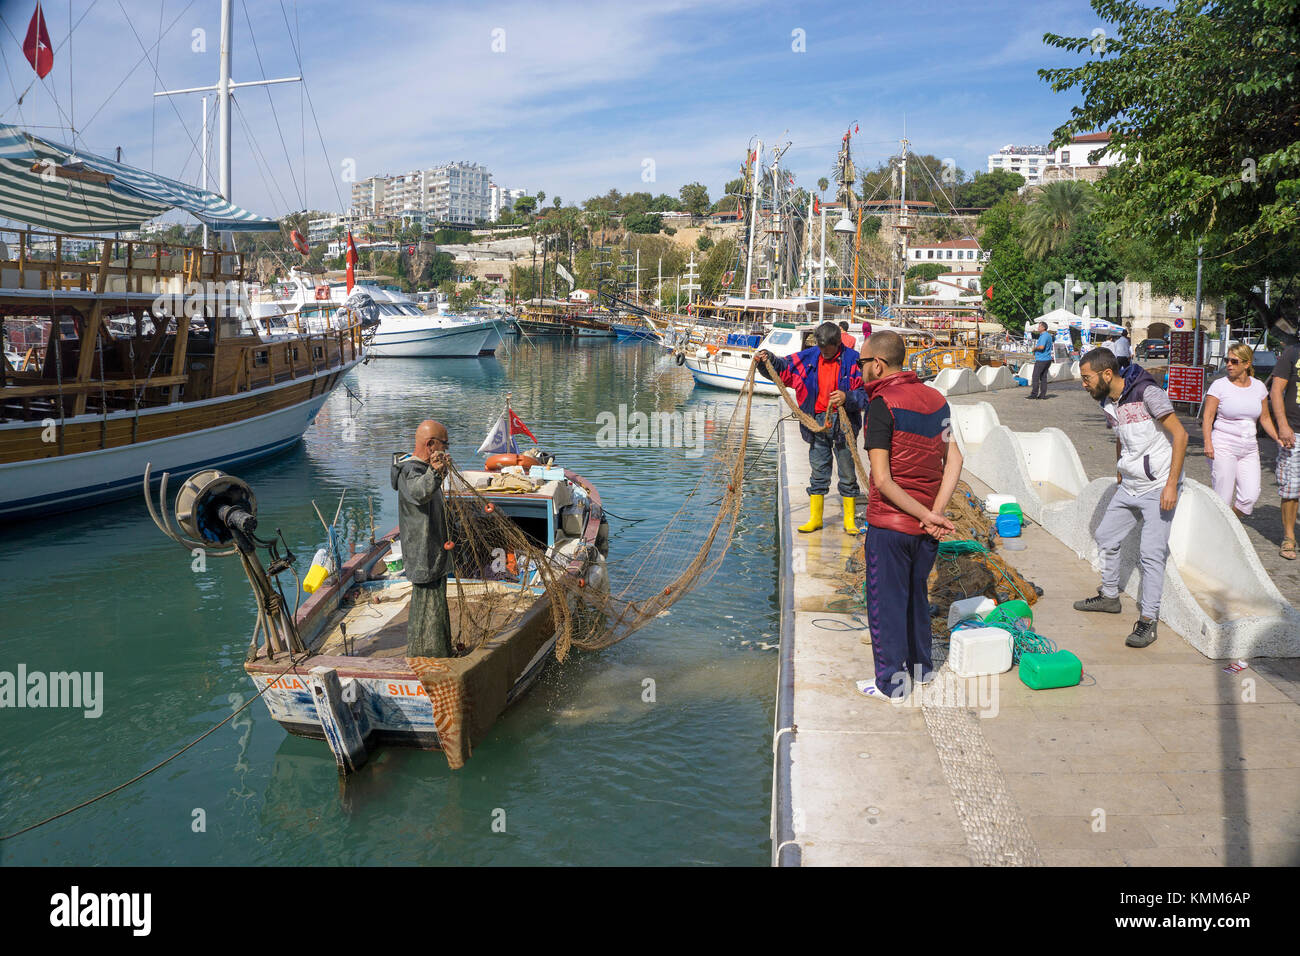 Les pêcheurs au travail, Port, Vieille ville de Kaleici, Antalya, Turkish riviera, Turquie Banque D'Images